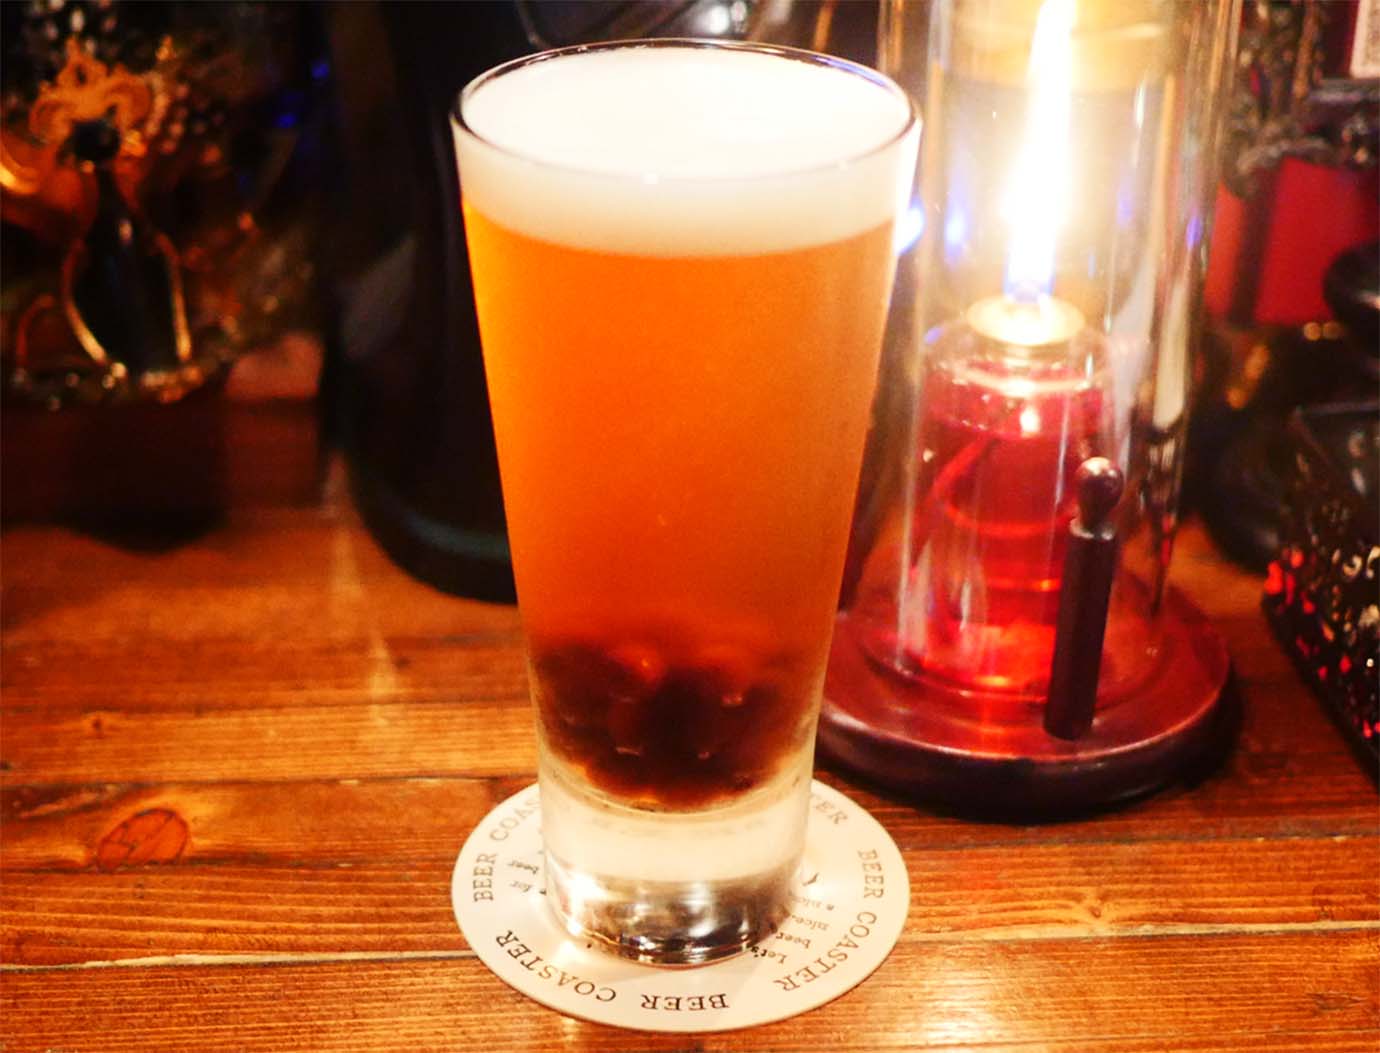 【革命グルメ】魅惑のタピオカ入りビールが感動する美味しさ / 渋谷 THE GRIFFON